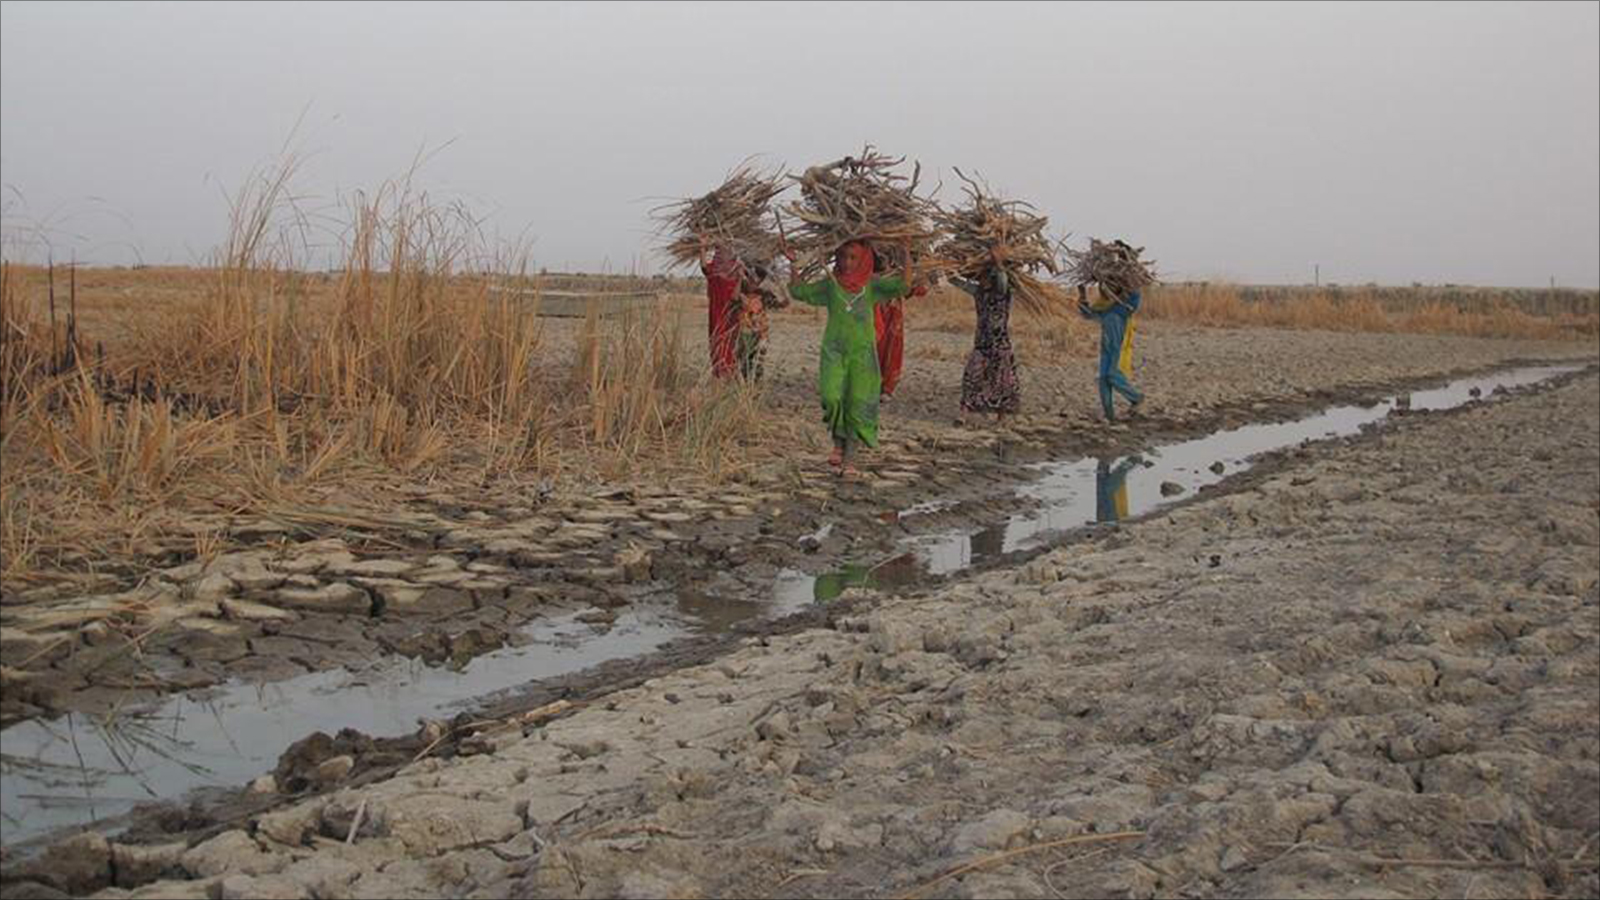 الجفاف متوقع أن يتسبب بأضرار كبيرة للزراعة والبيئة والحياة (مواقع التواصل)